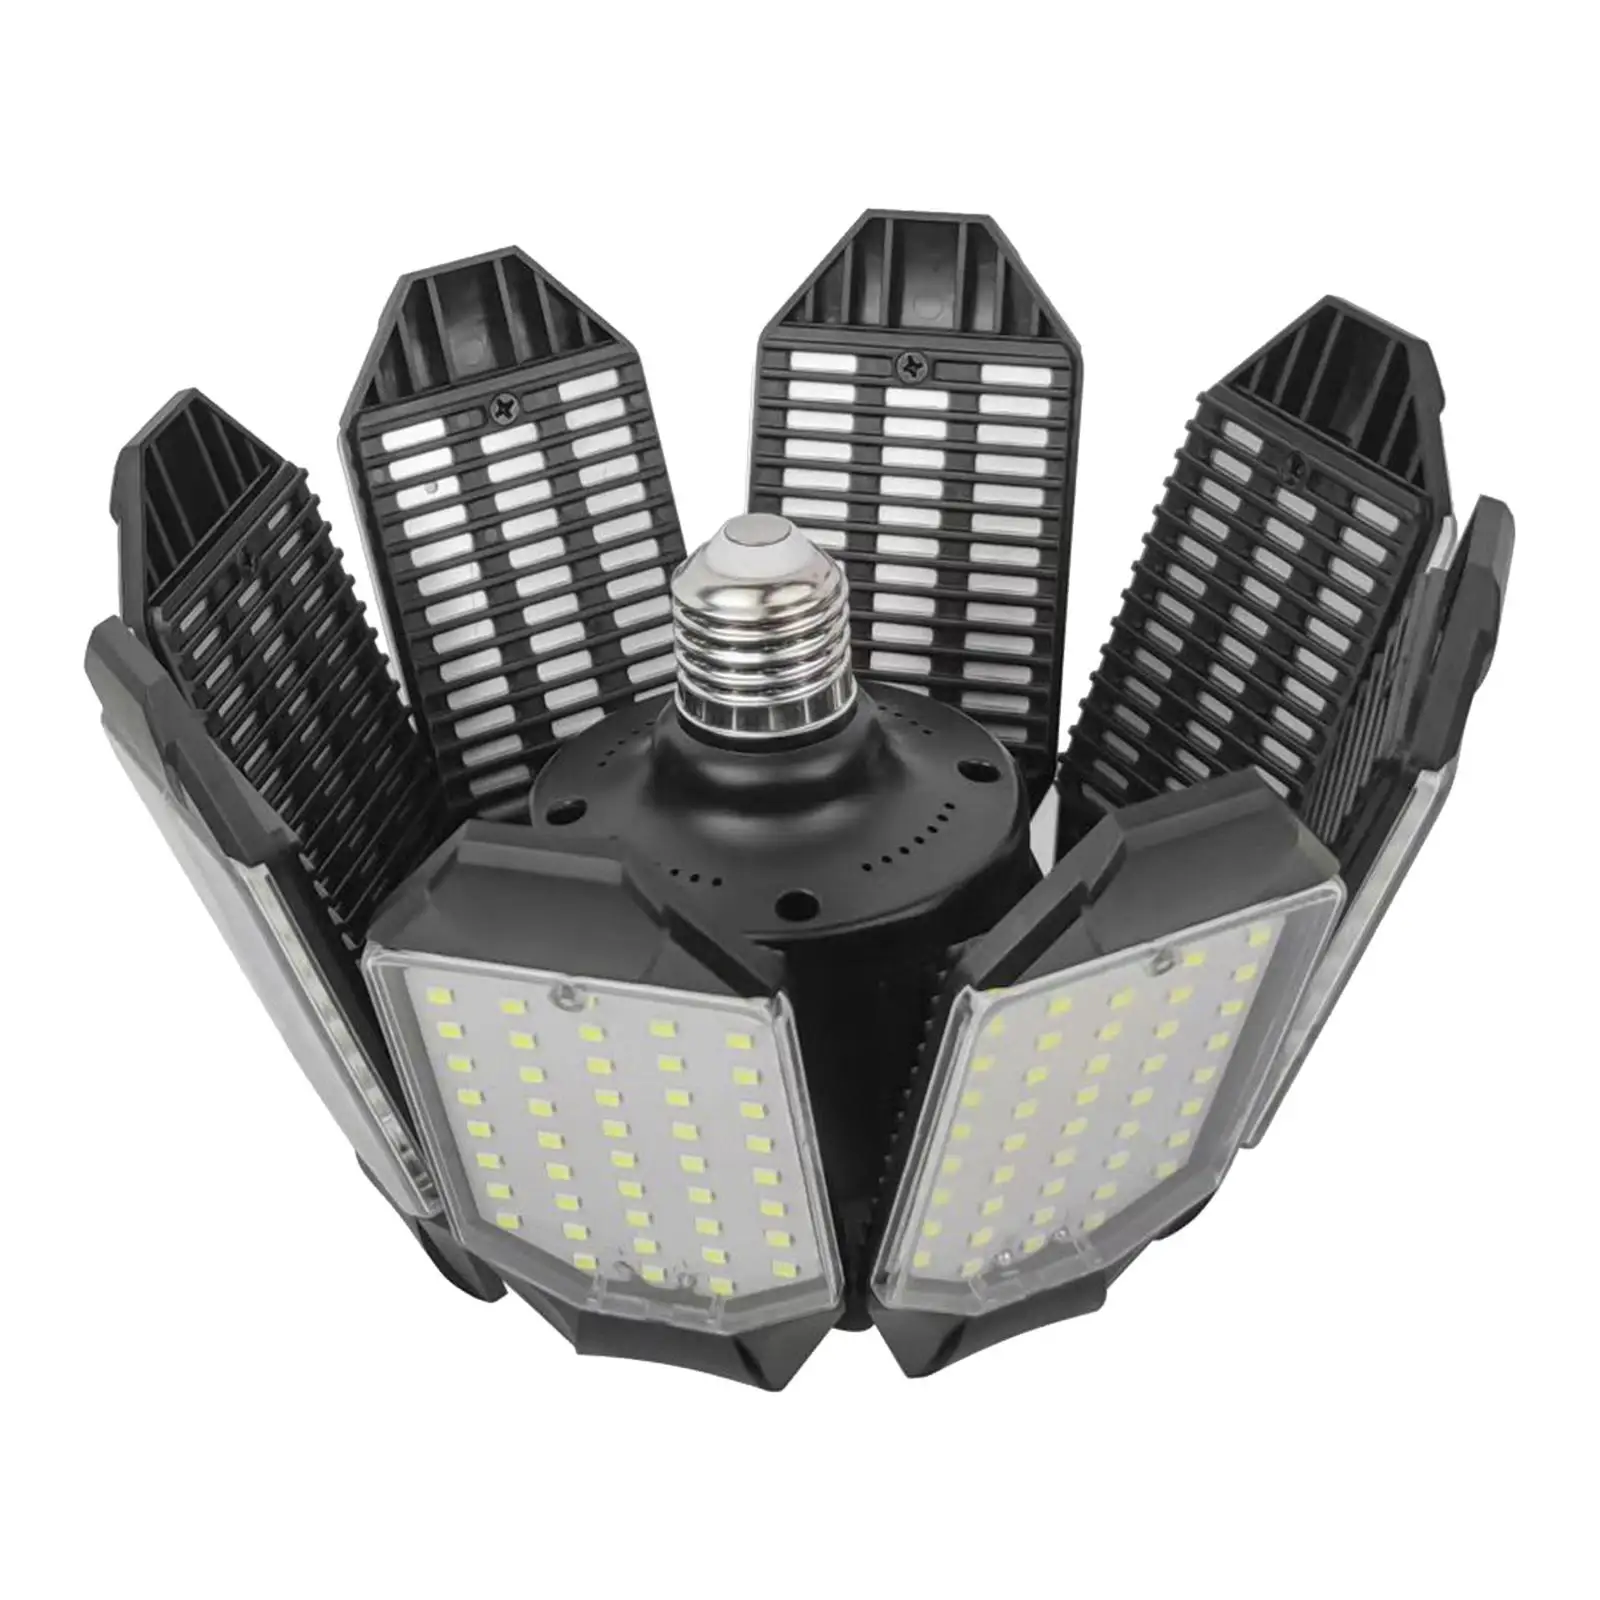 Folding LED Garage Light Bulb Workshop Bulb Fixture Lamp with 8 Adjustable Panel LED Lights